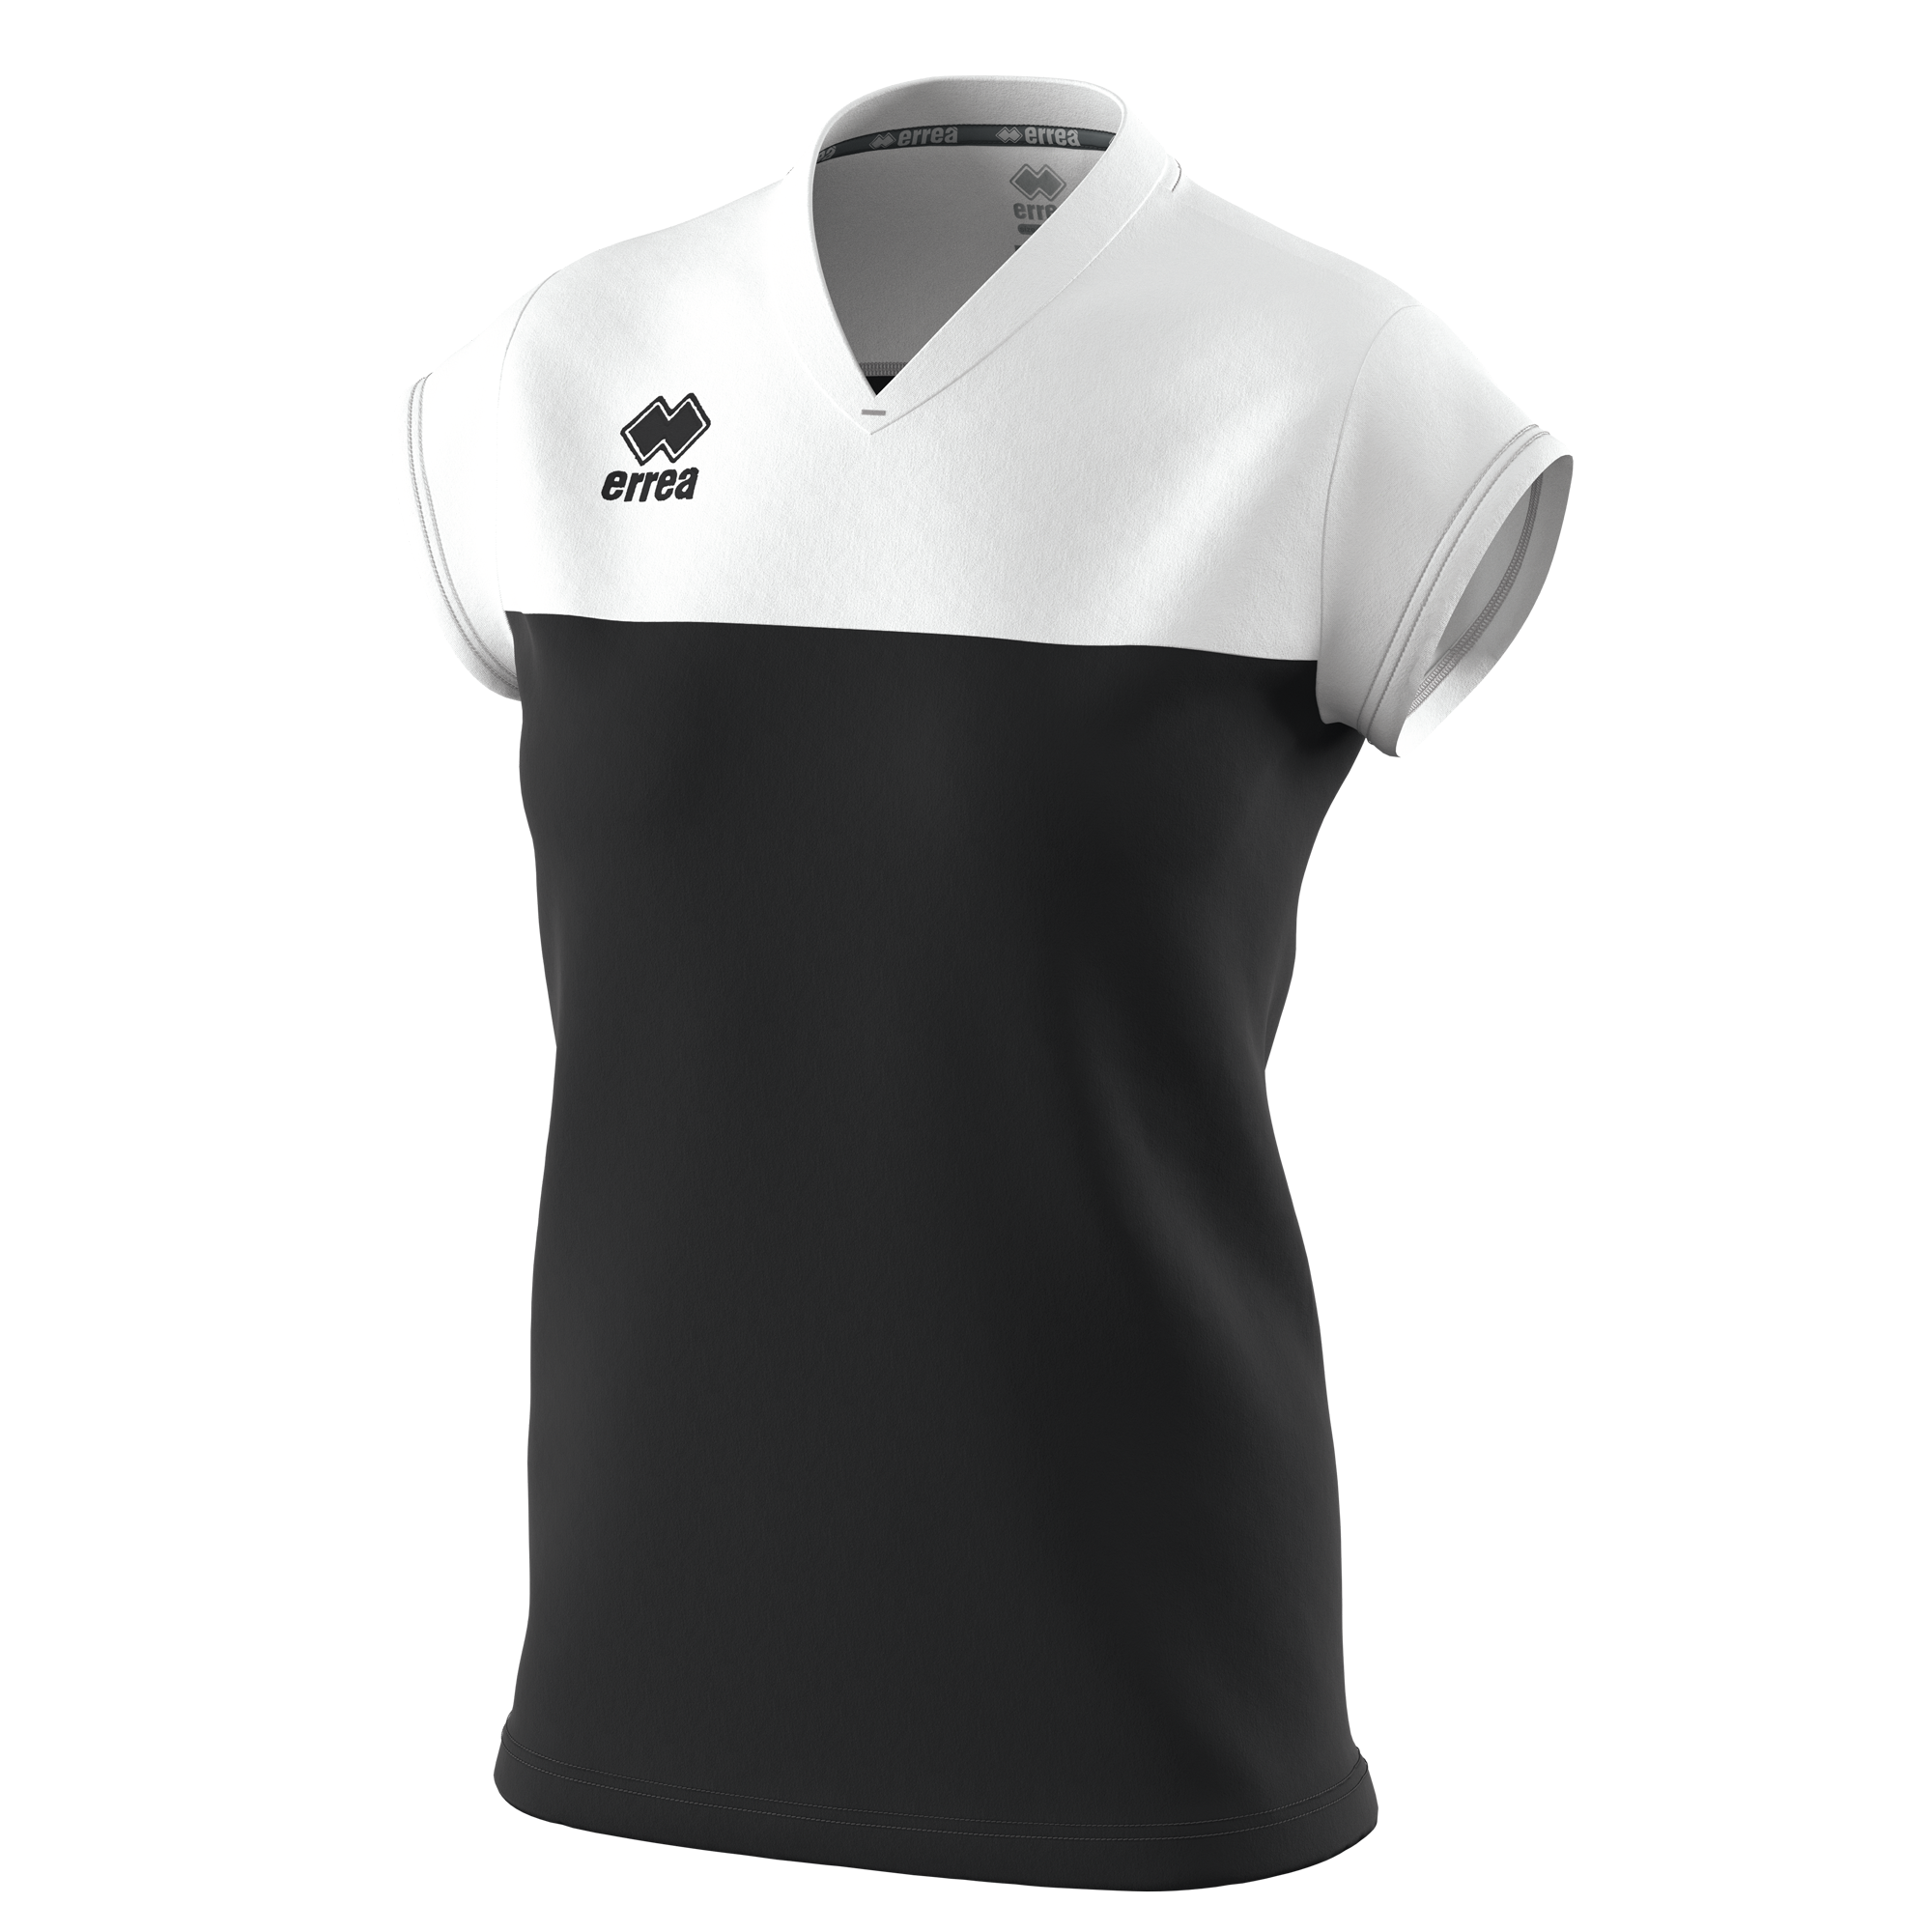 Волейбольна футболка жіноча Errea BESSY Чорний/Білий